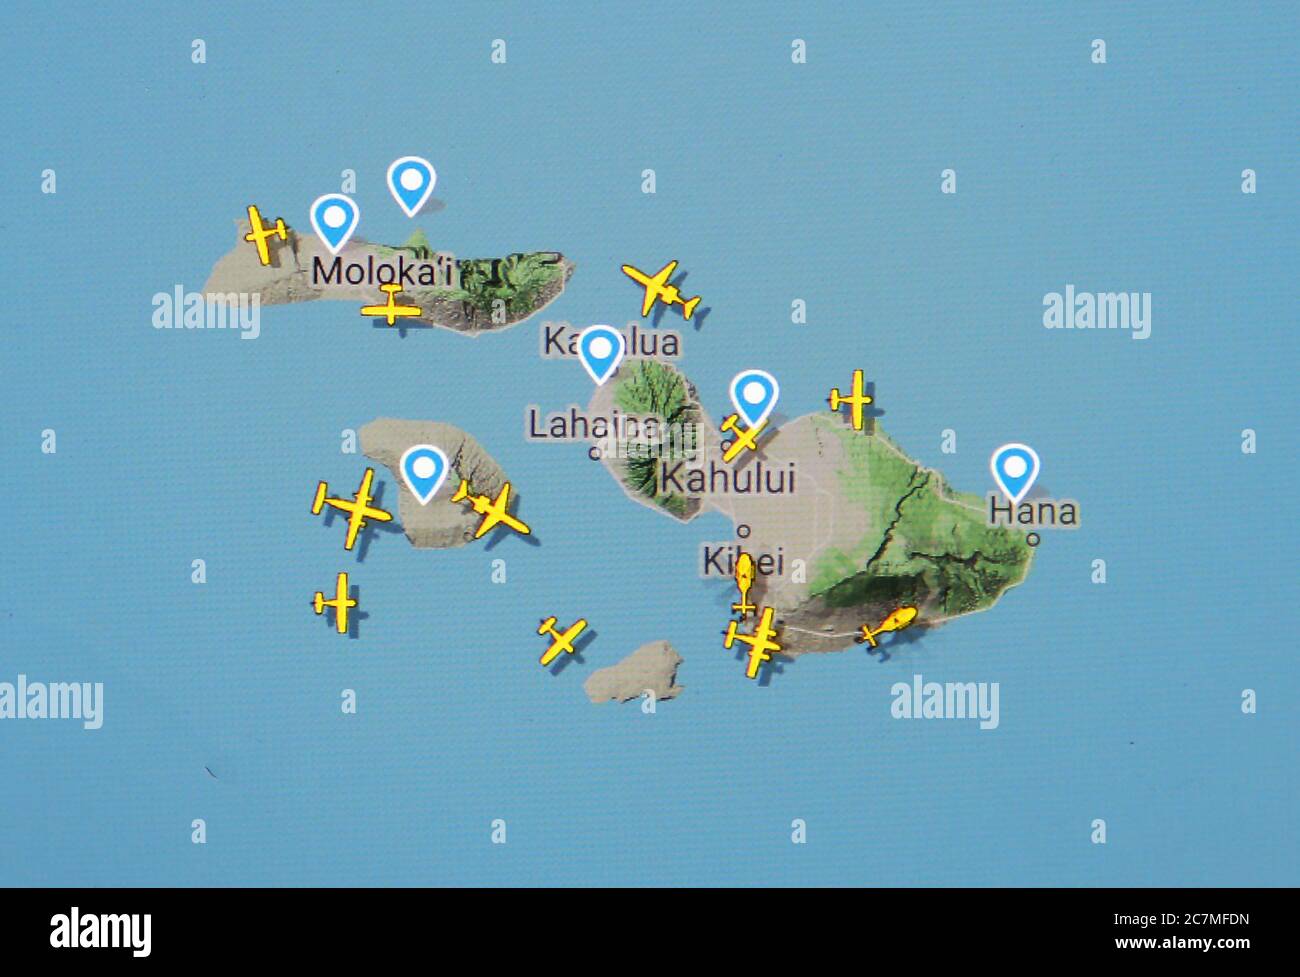 Flugverkehr auf Hawaii-Inseln (17. juli 2020, UTC 19.31) im Internet mit Flightradar 24-Standort, während der Coronavirus-Pandemie Stockfoto